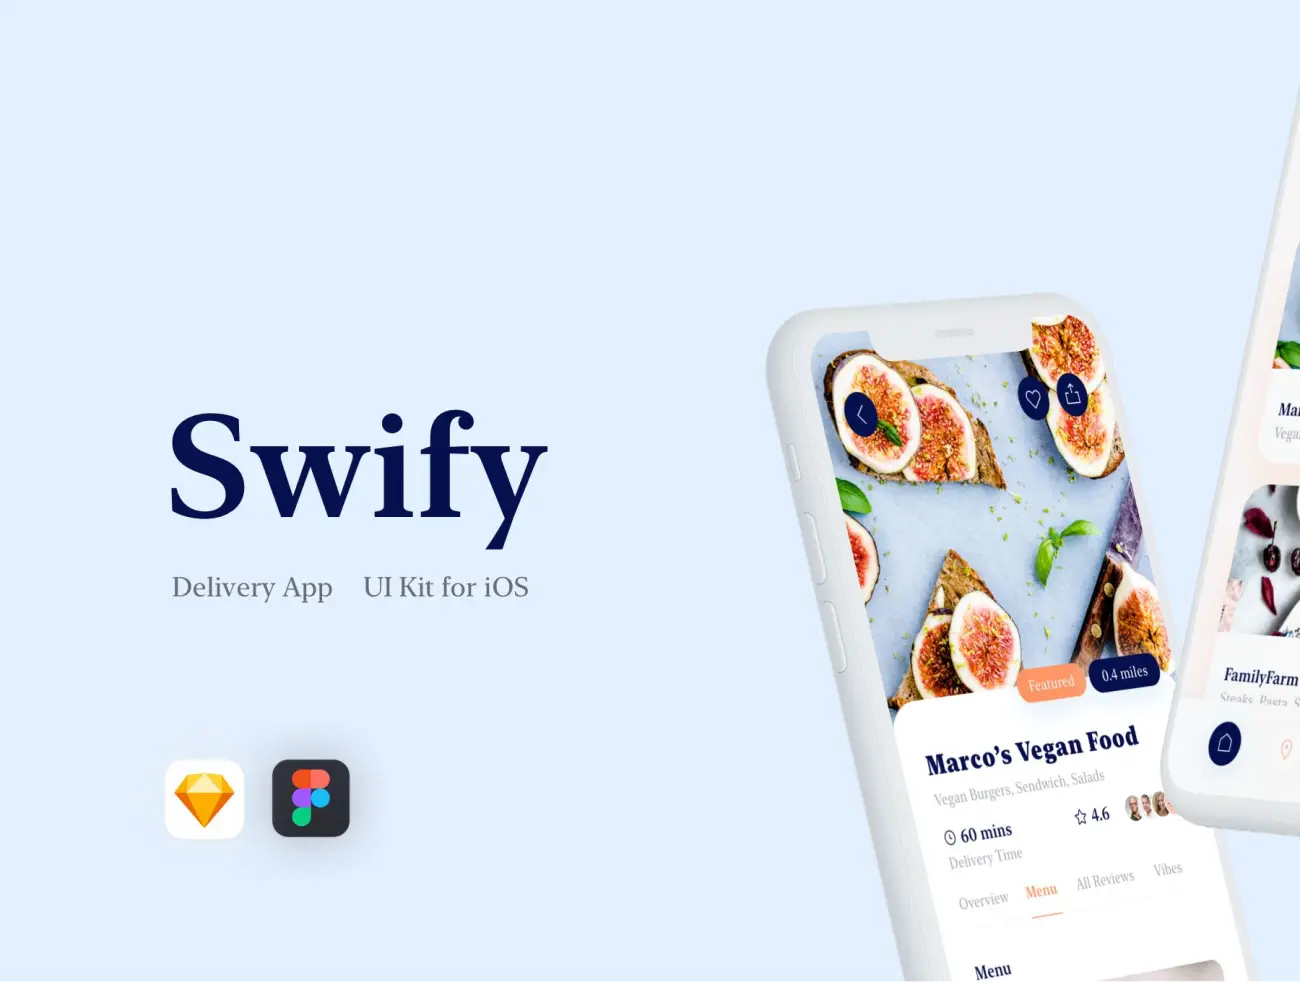 Swify delivery app iOS UI Kit 美食外卖块快递手机应用UI套件设计-UI/UX、ui套件、主页、介绍、付款、列表、卡片式、图表、应用、引导页、支付、数据可视化-仪表板、注册、登录页、着陆页、网站、网购、表单、预订-到位啦UI